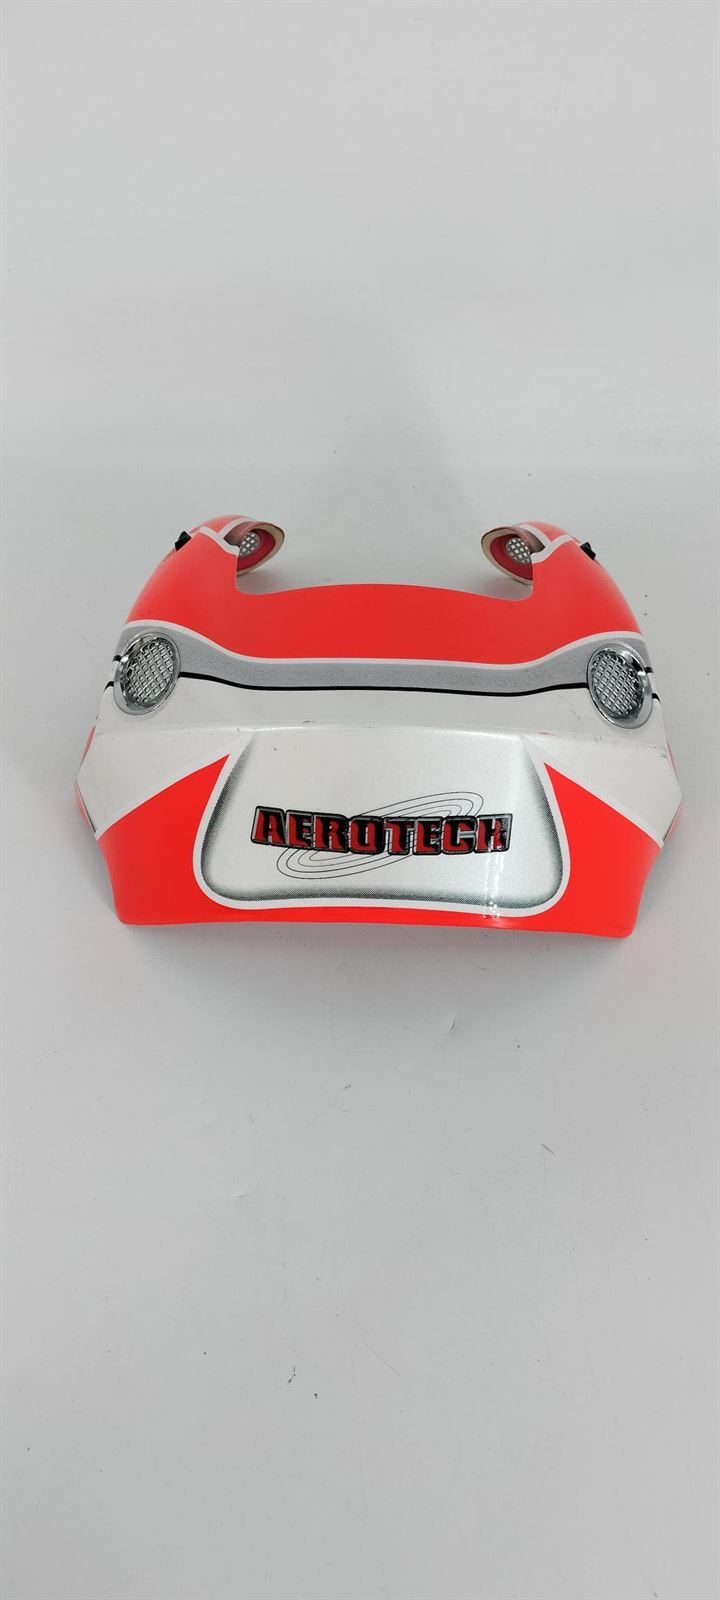 Aleron casco integral Nitro Aerotech naranja - Imagen 2